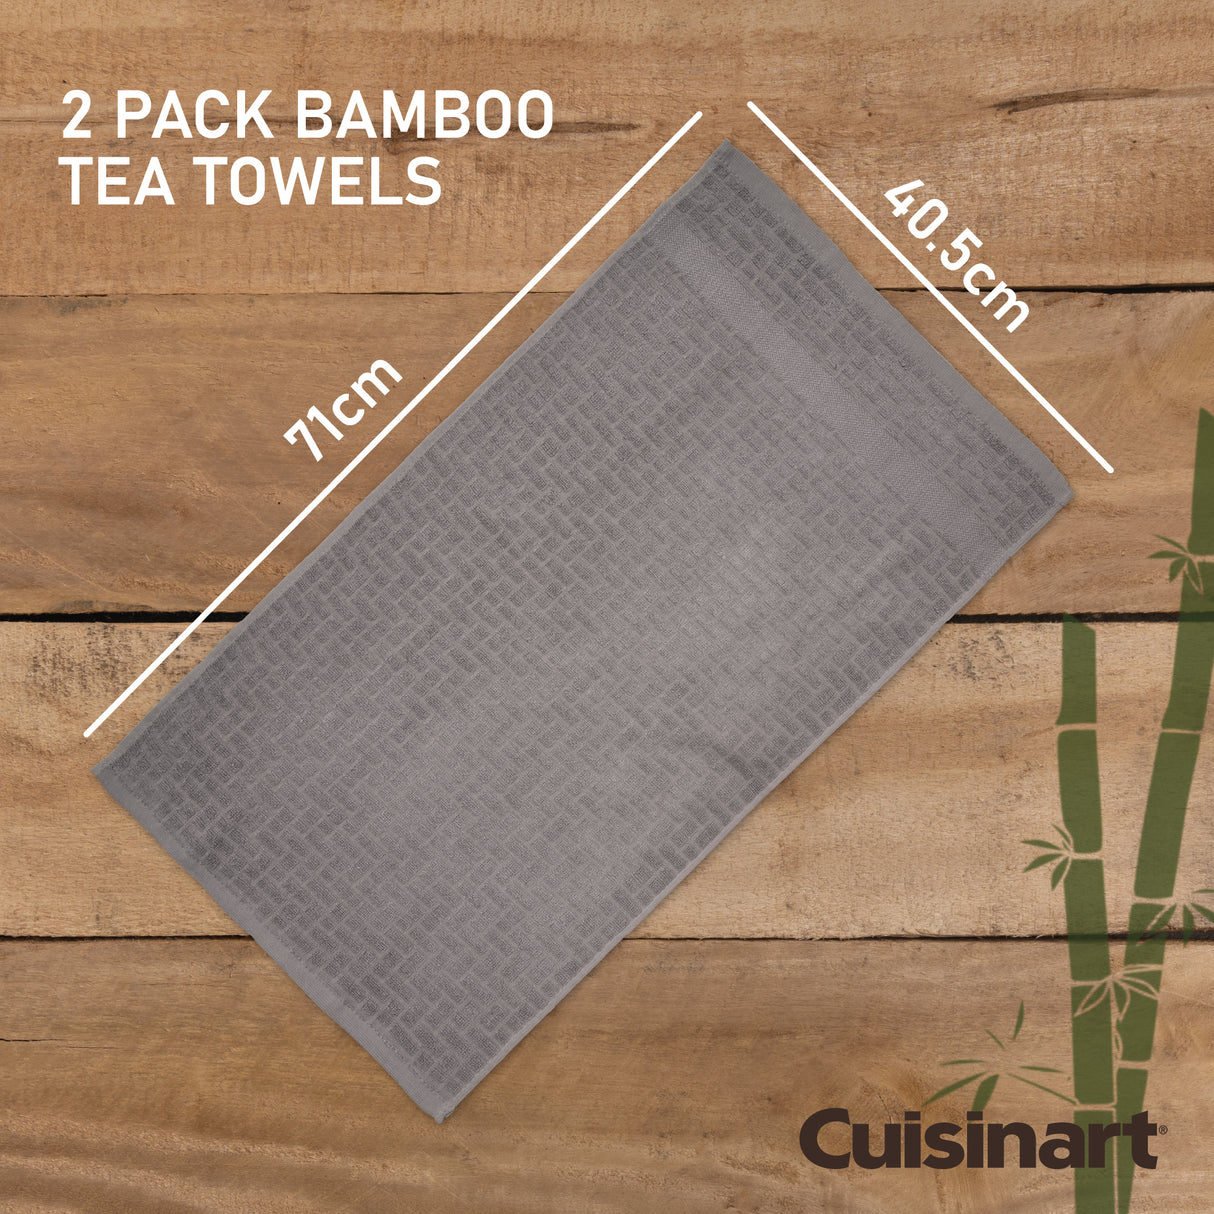 Cuisinart Bamboo Tea Towel, 2 Piece Set, Light Grey